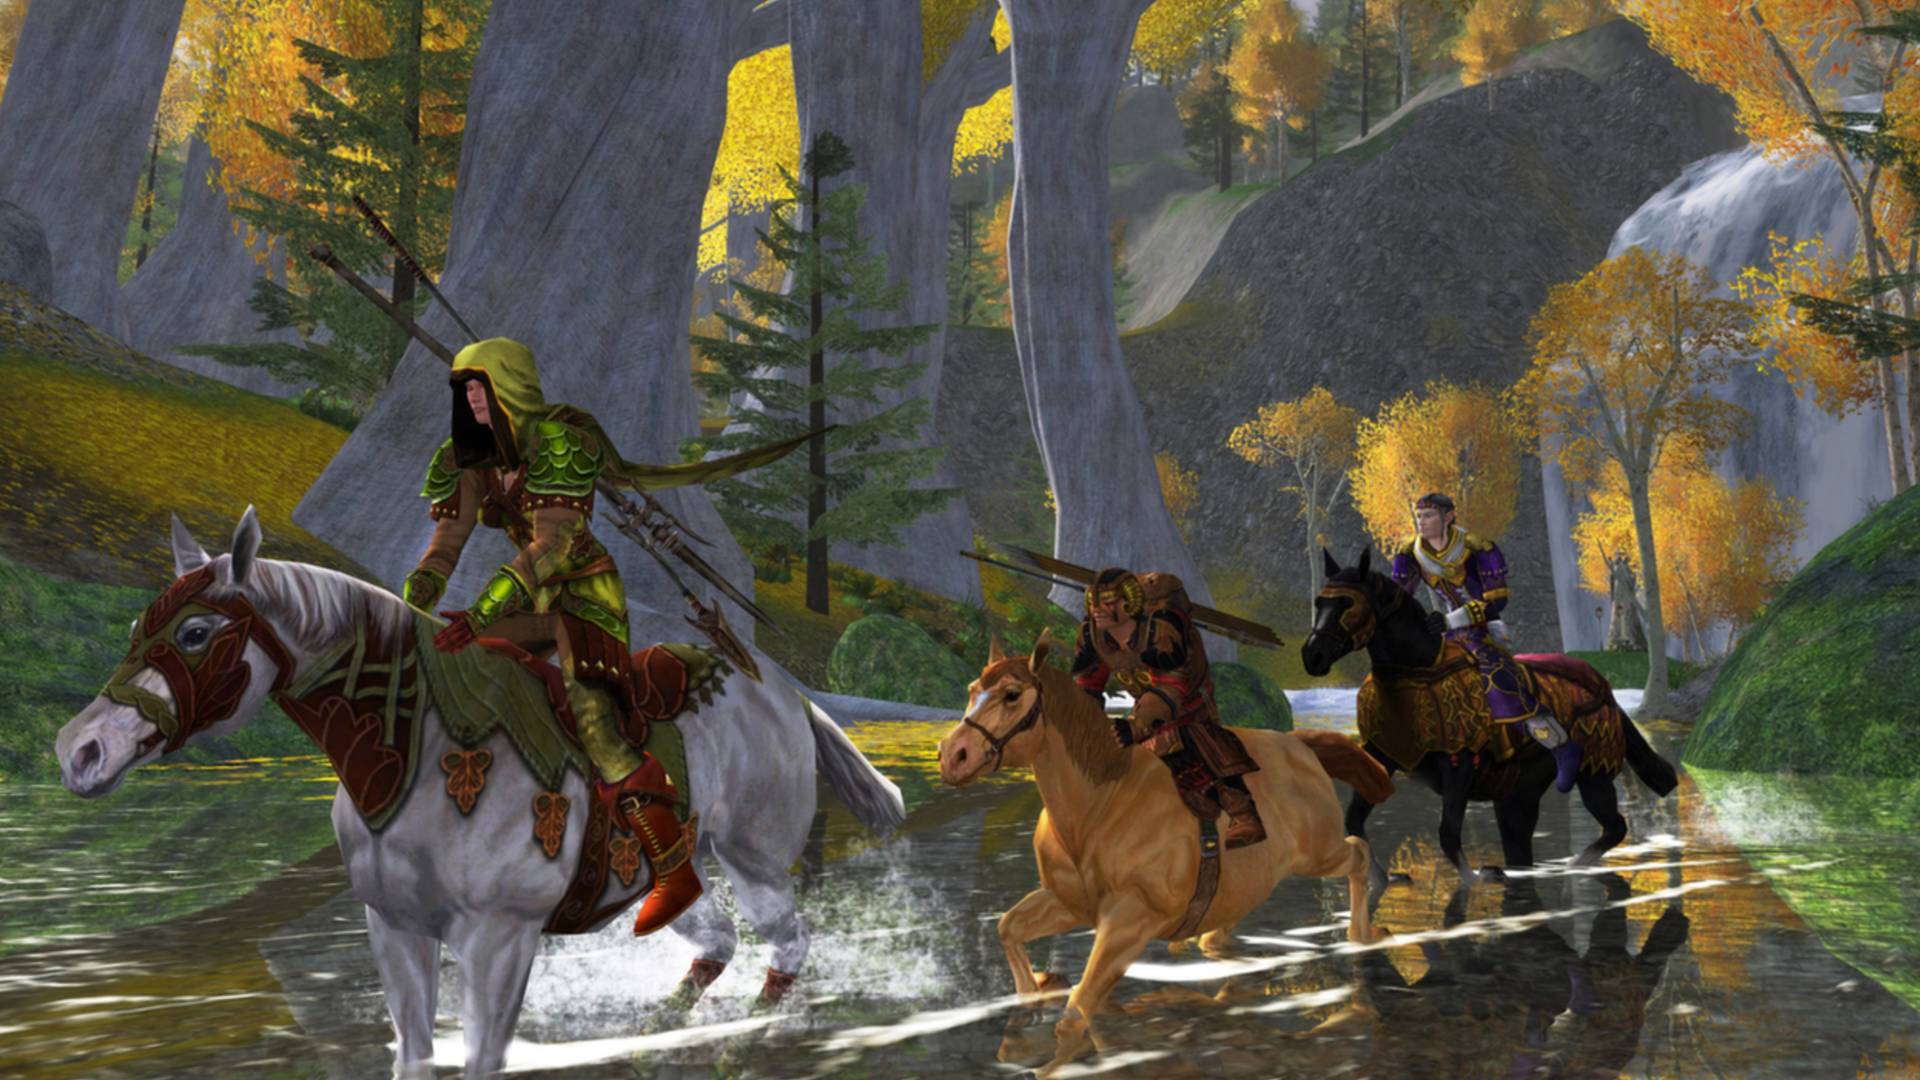 I migliori MMO gratuiti: Lord of the Rings Online. L'immagine mostra una processione di persone sui cavalli che cavalcano un fiume